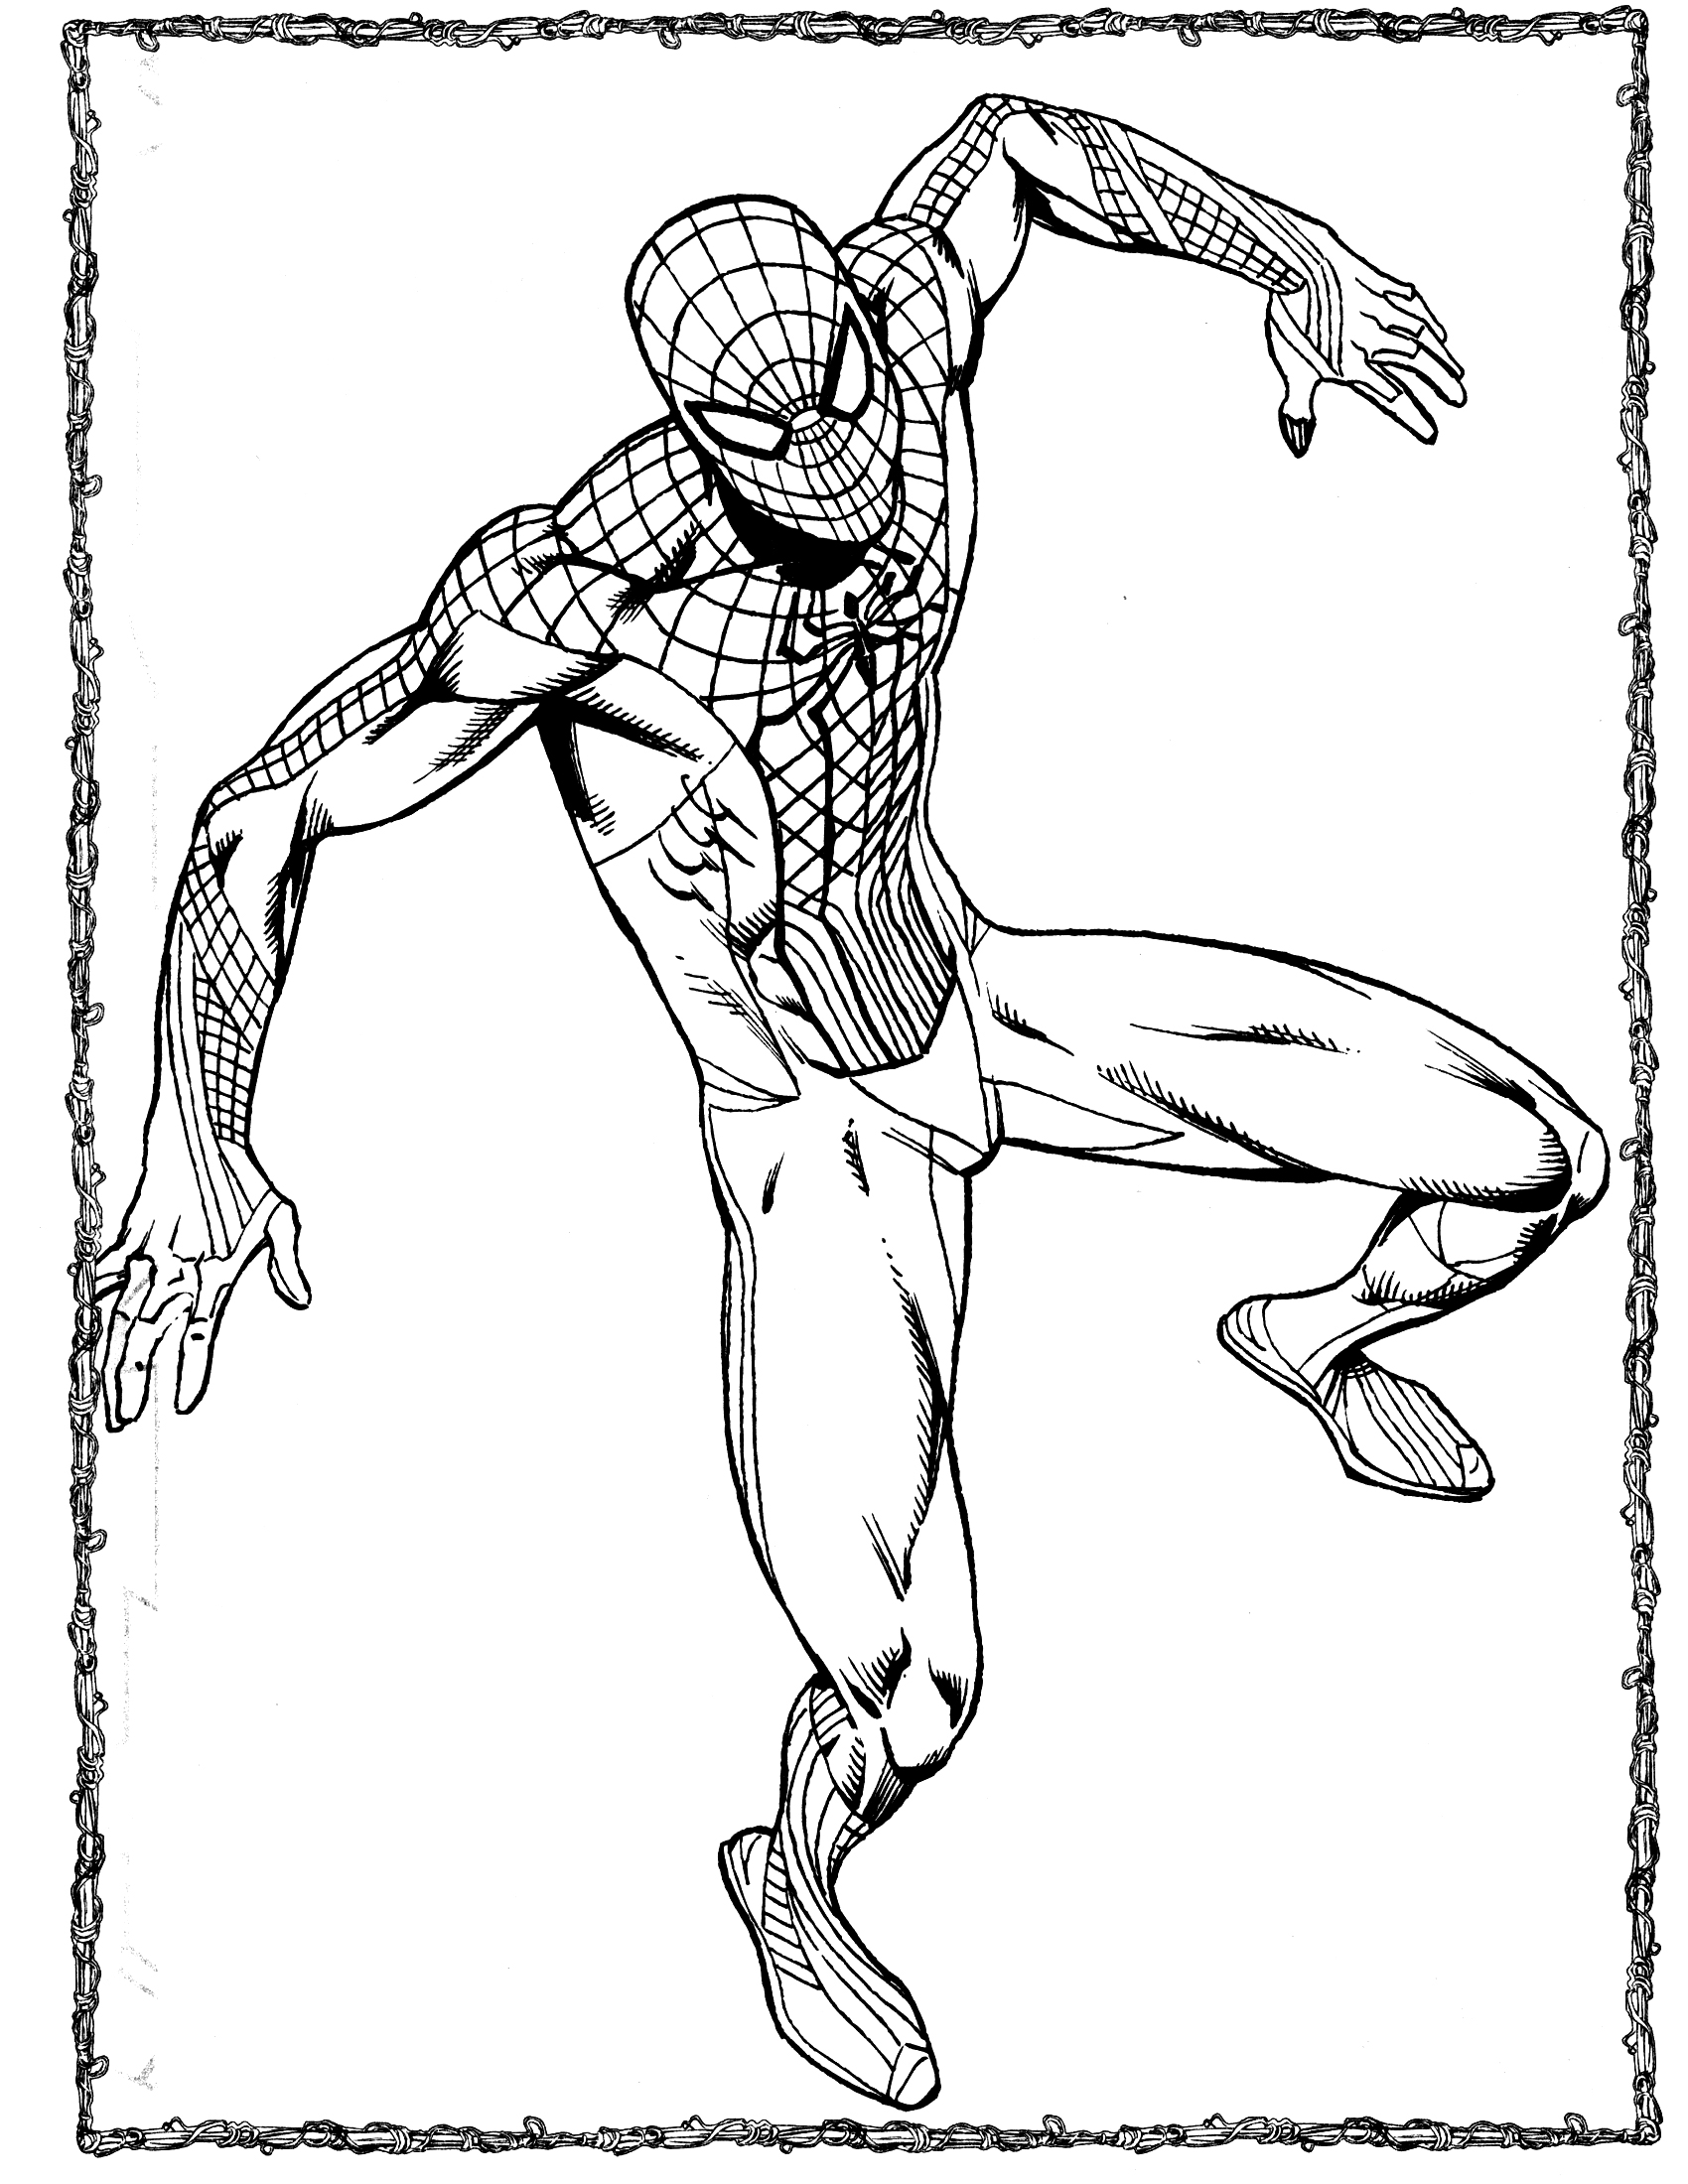 Disegno di spiderman da colorare for Disegni di spiderman da colorare e stampare